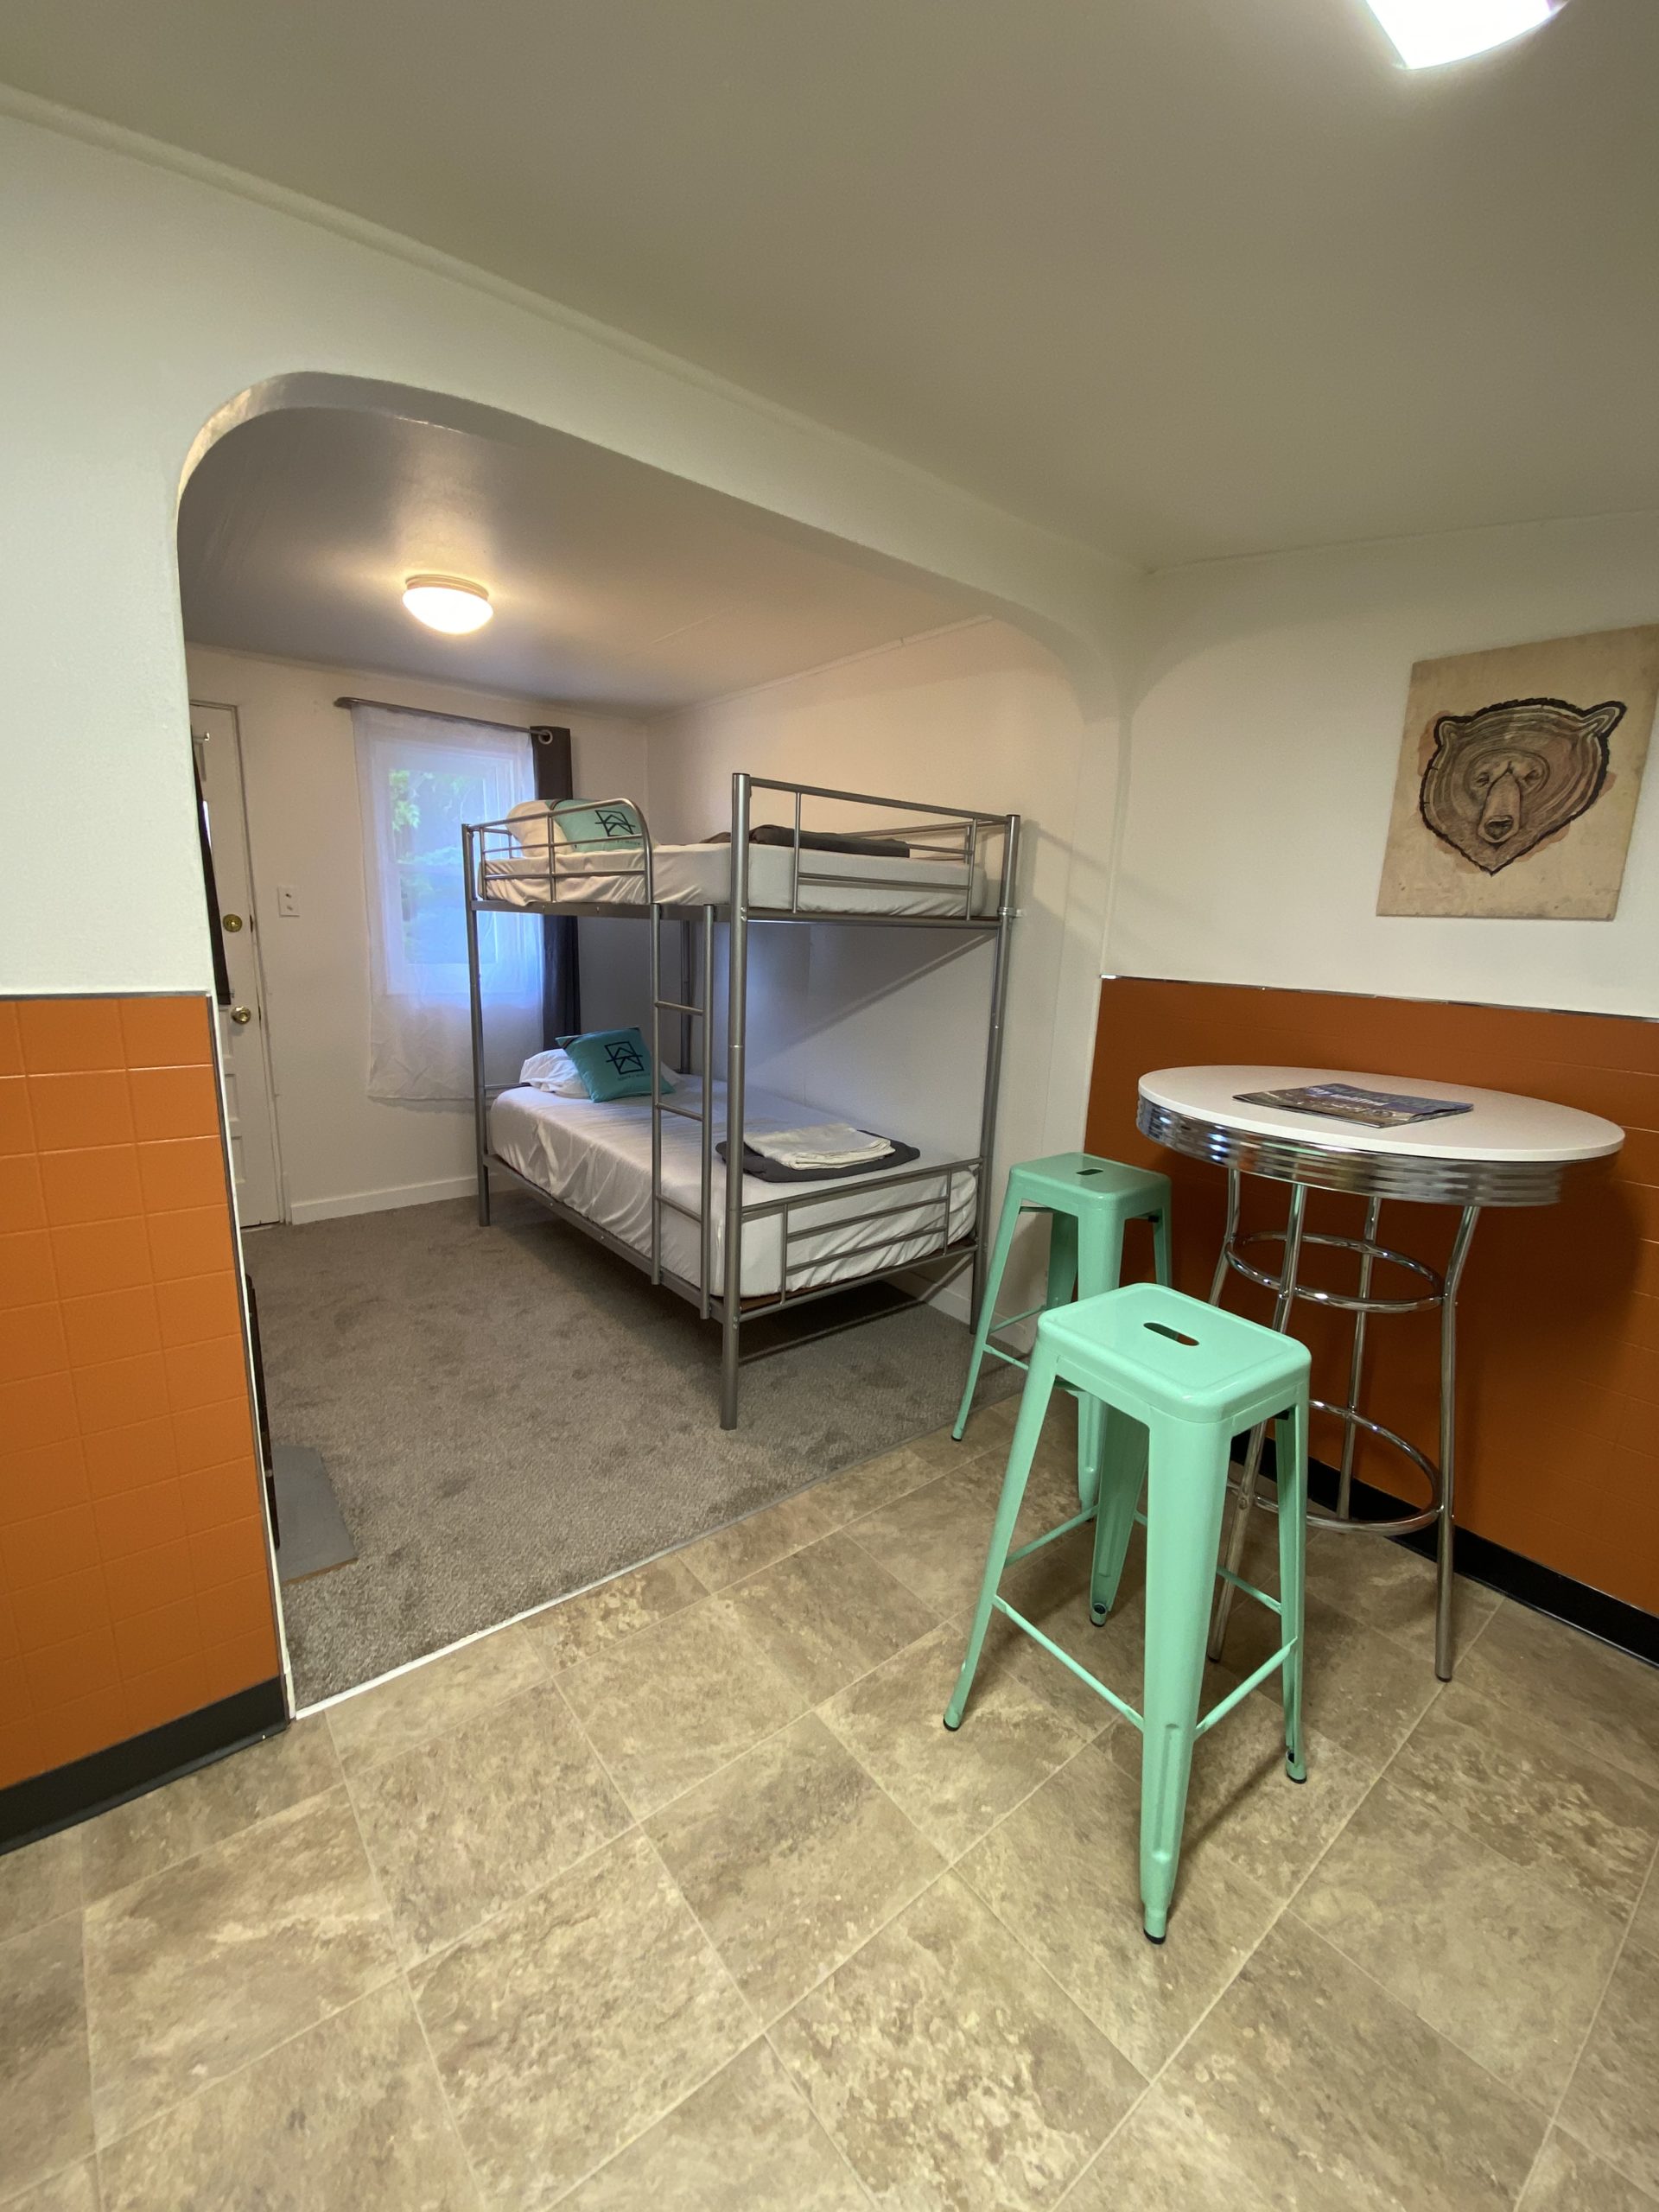 Hotel in Lyon's Colorado with Bunk Beds